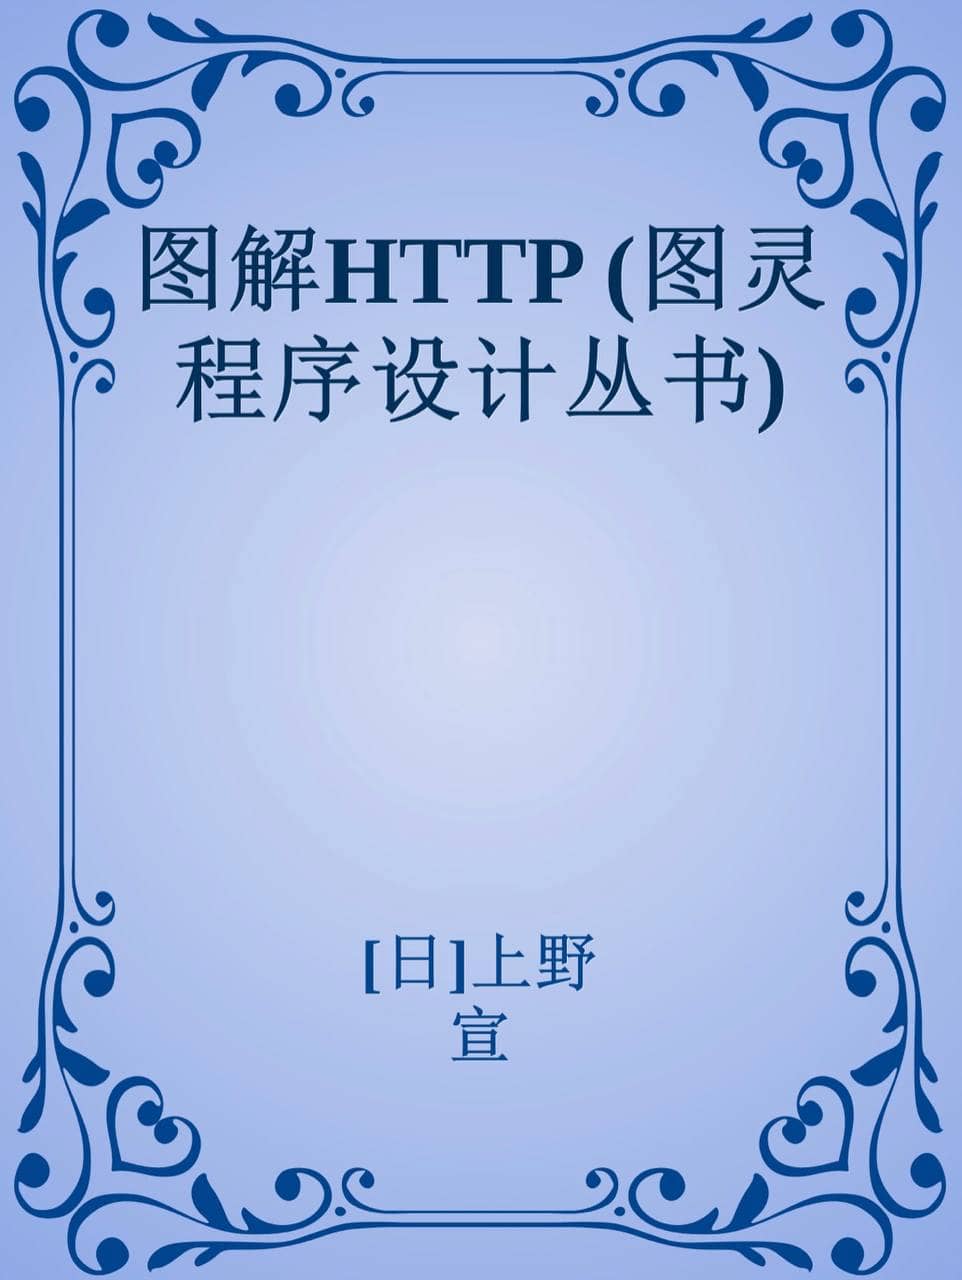 图解HTTP (图灵程序设计丛书) [epub & mobi & PDF 电子书]